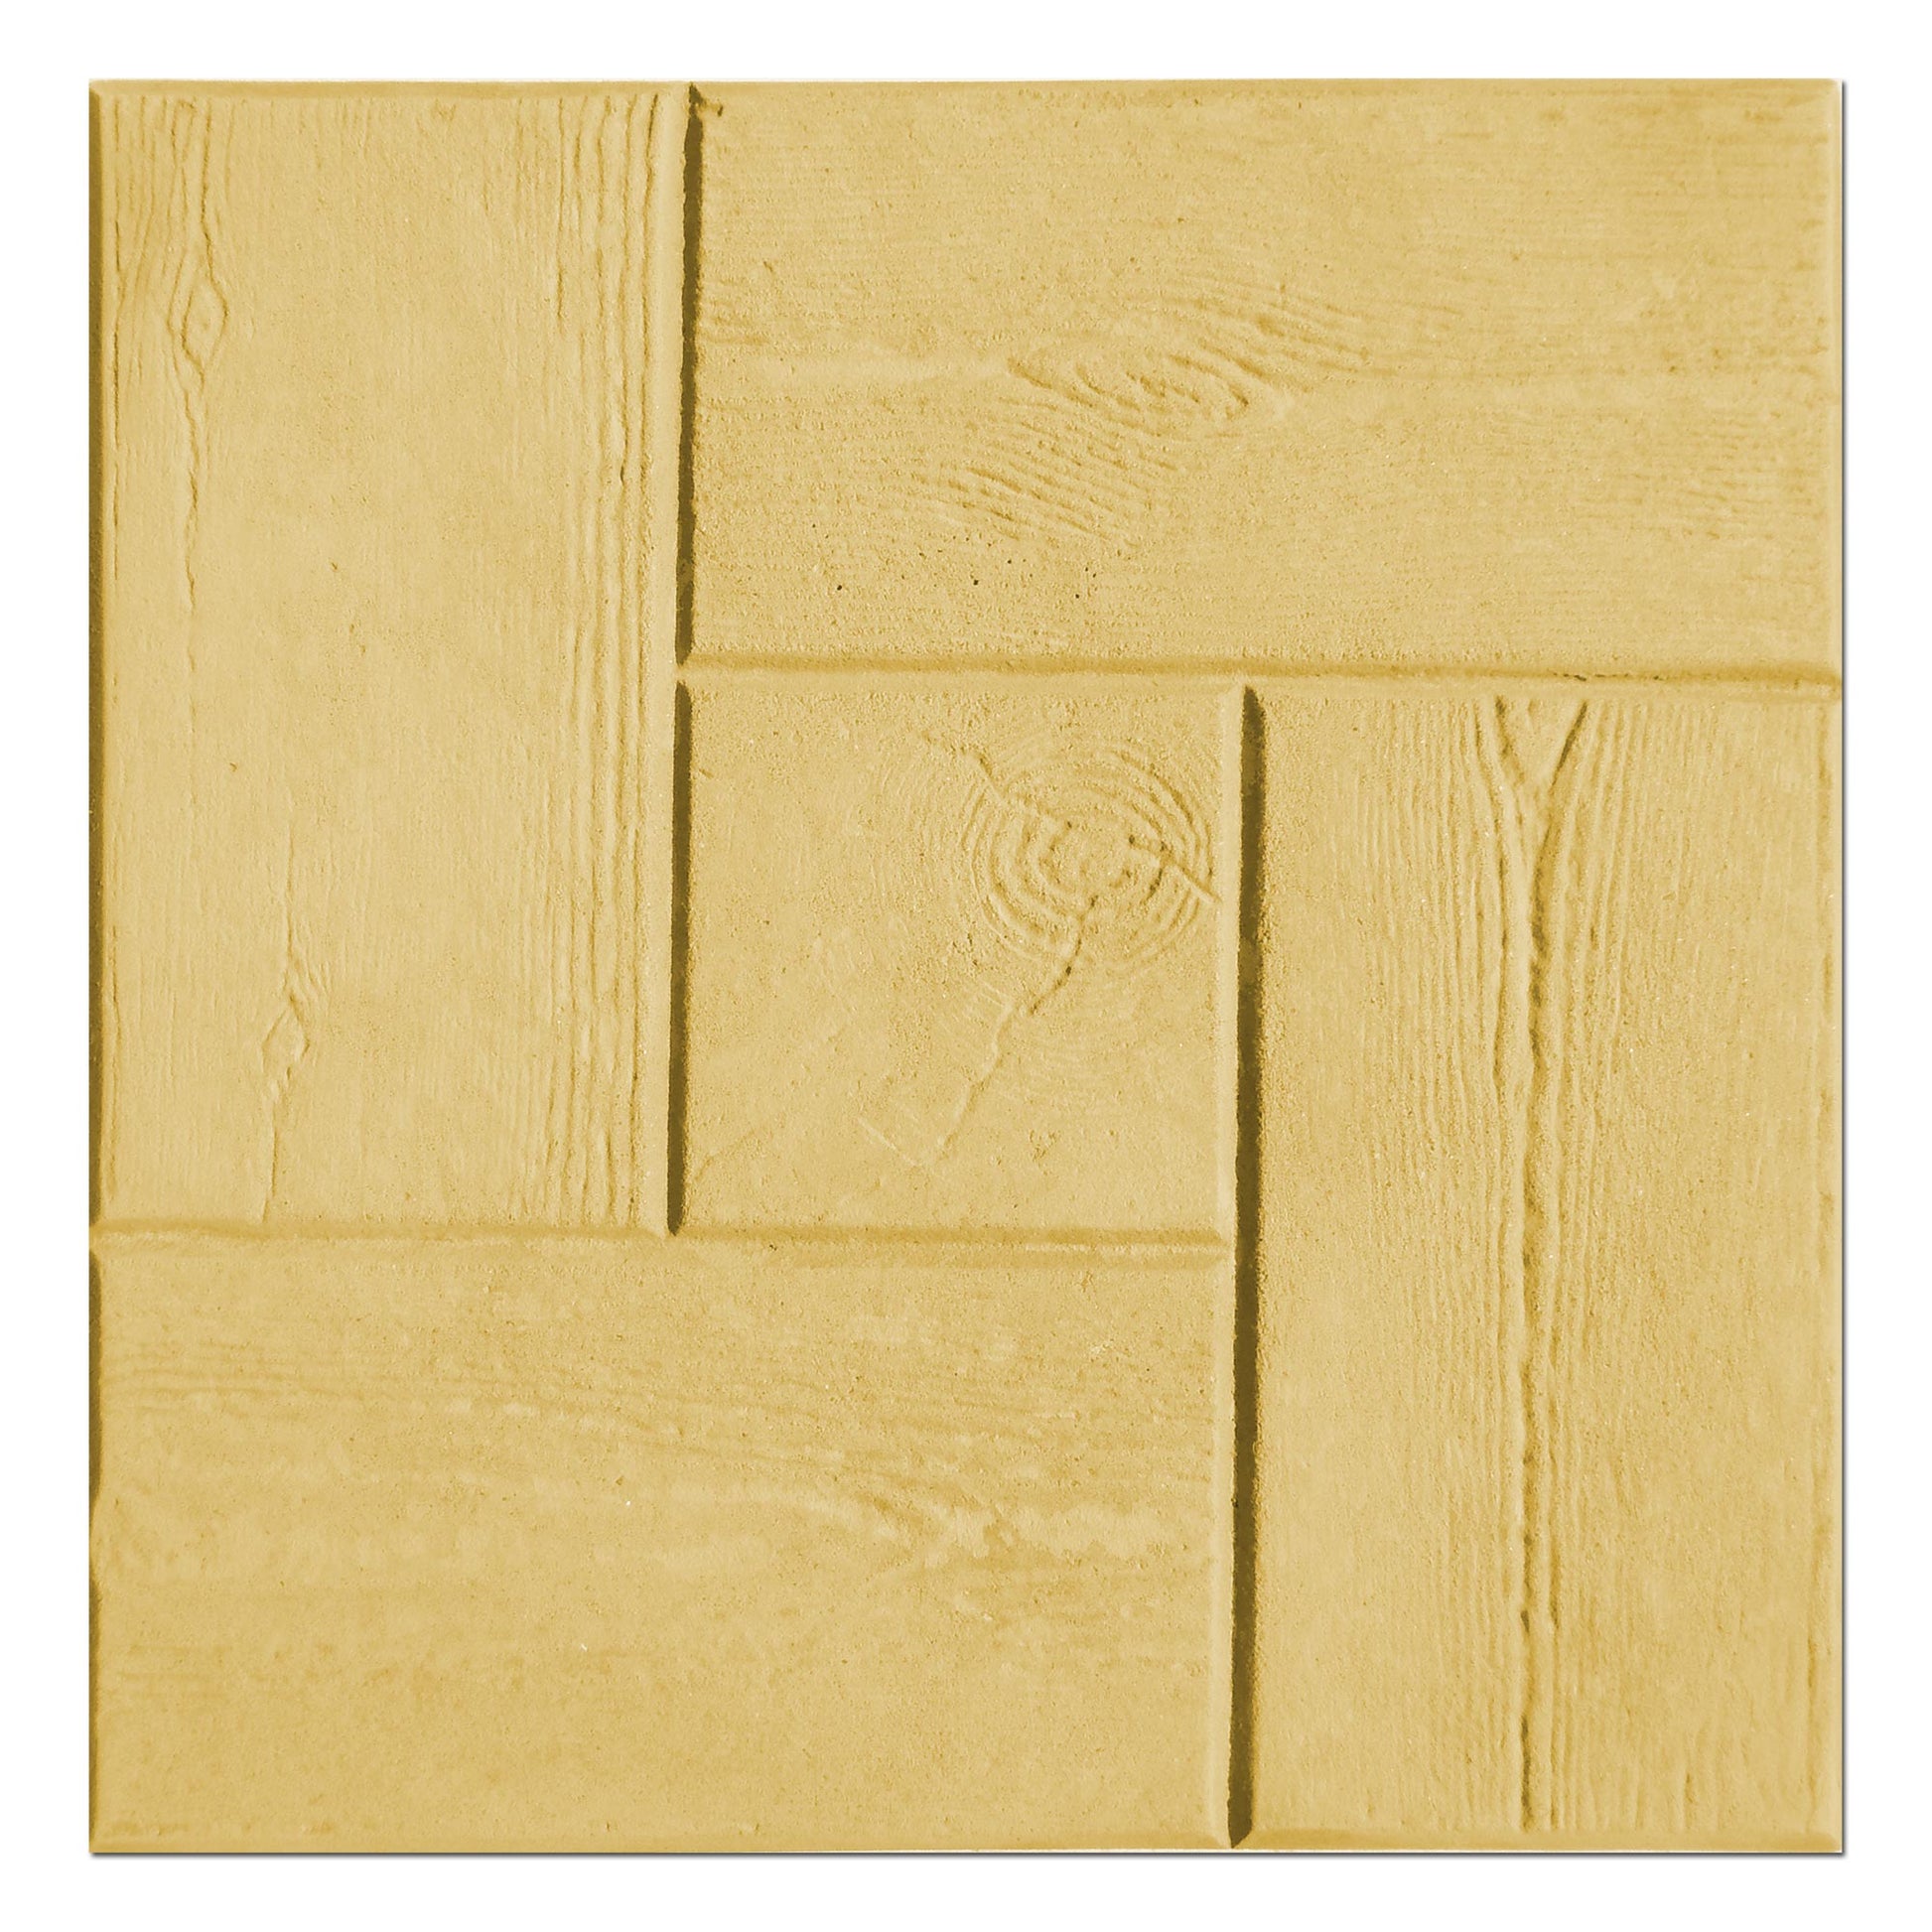 Gelbfarbe für Beton / Zement / Gips - 20kg Sack - Farbprodukt